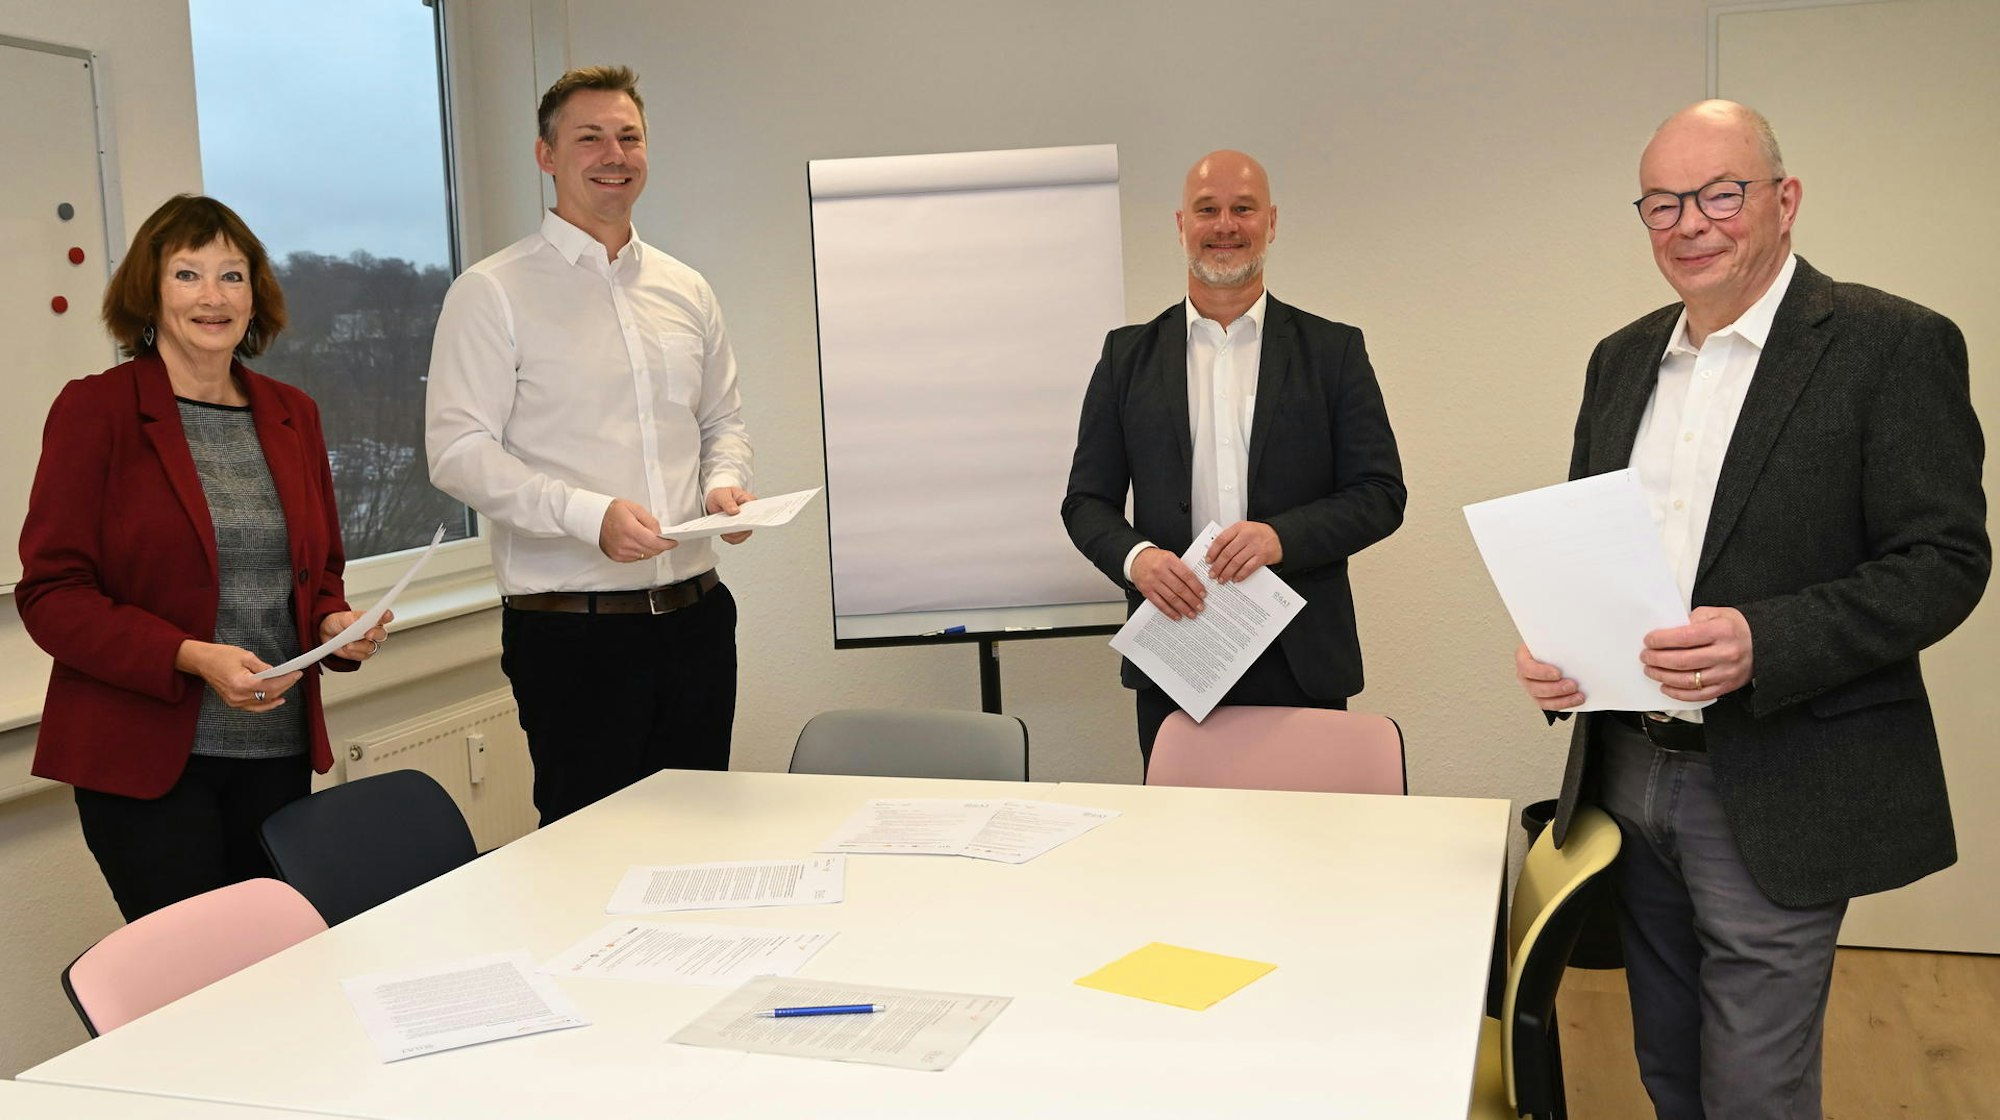 Claudia Seydholdt (Kette), Marco Reis (Softdoor), Markus Homburg (SRH Business) und Michael Schulte, Geschäftsführer des Jobcenters, stellten das Projekt vor.